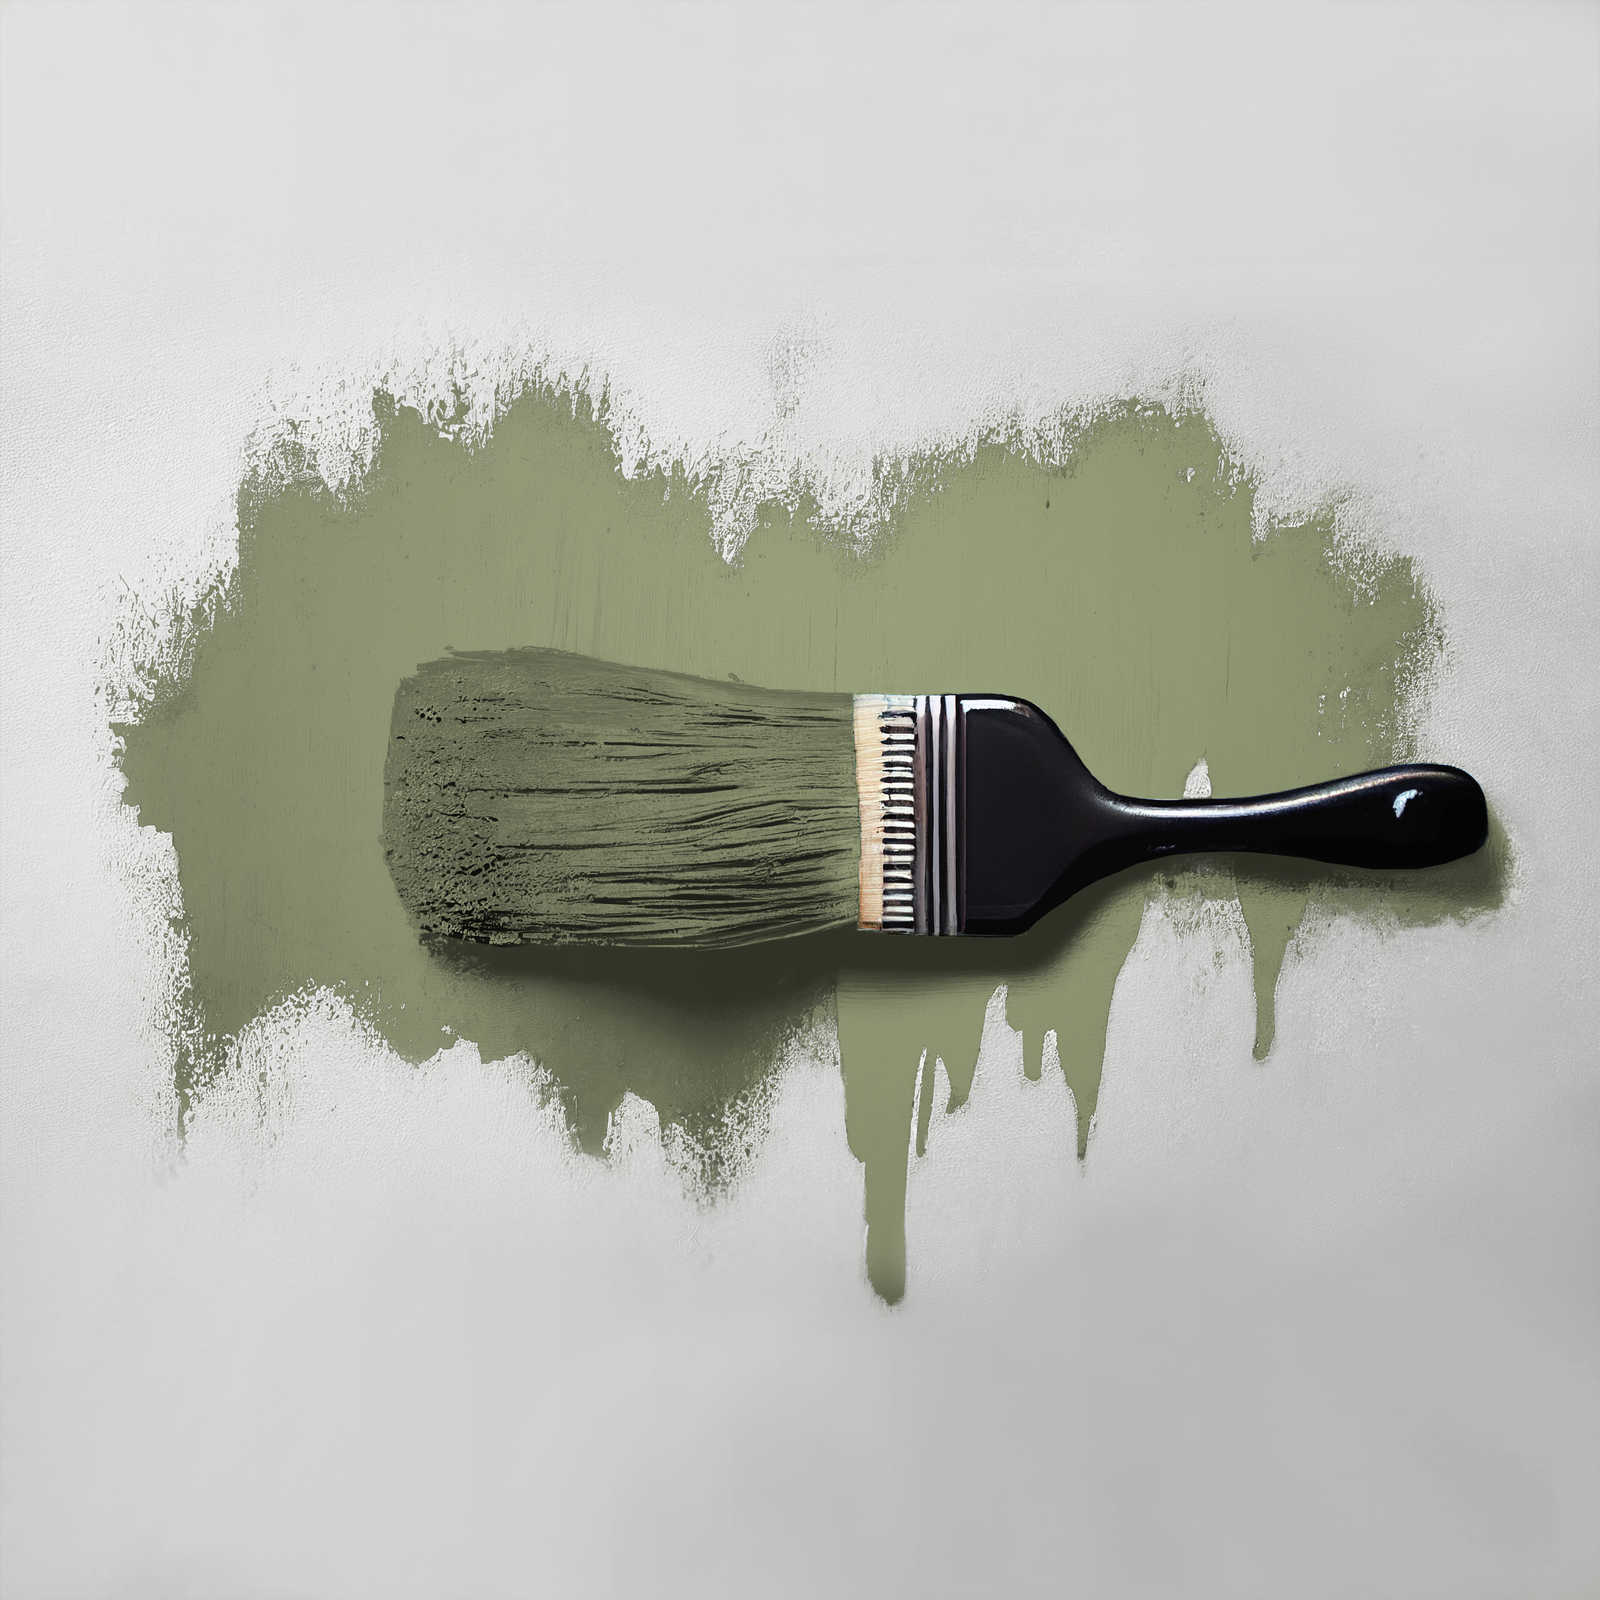             Wandfarbe in wohnlichem Grün »Balmy Basil« TCK4002 – 2,5 Liter
        